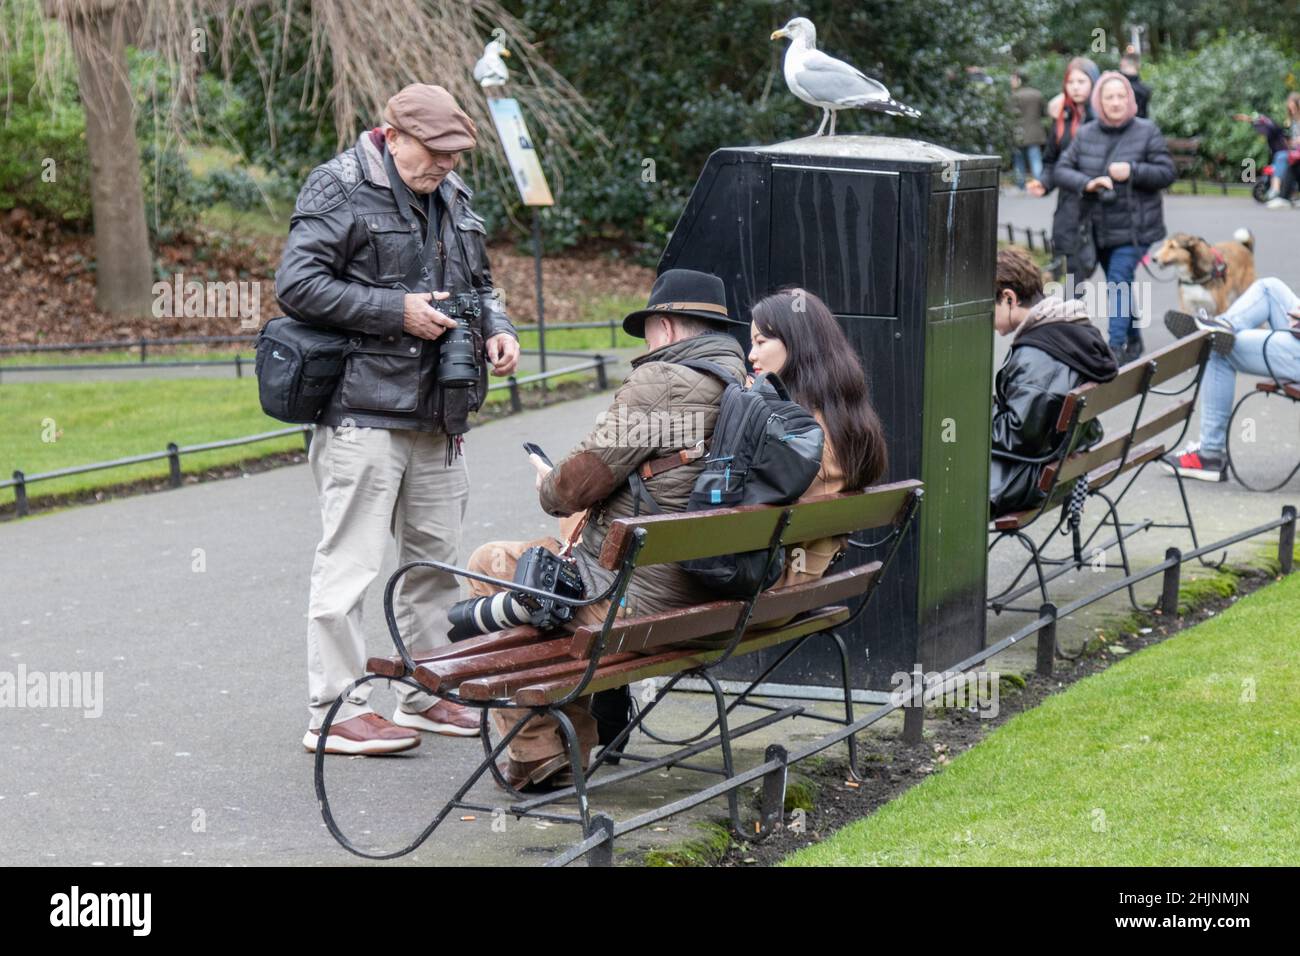 Fotografen überreden ein Mädchen auf einer Bank sitzen, um für Fotos posieren, St. Stephen’s Green Park , Stadt, Straßenfotografie, Dublin, Irland Stockfoto